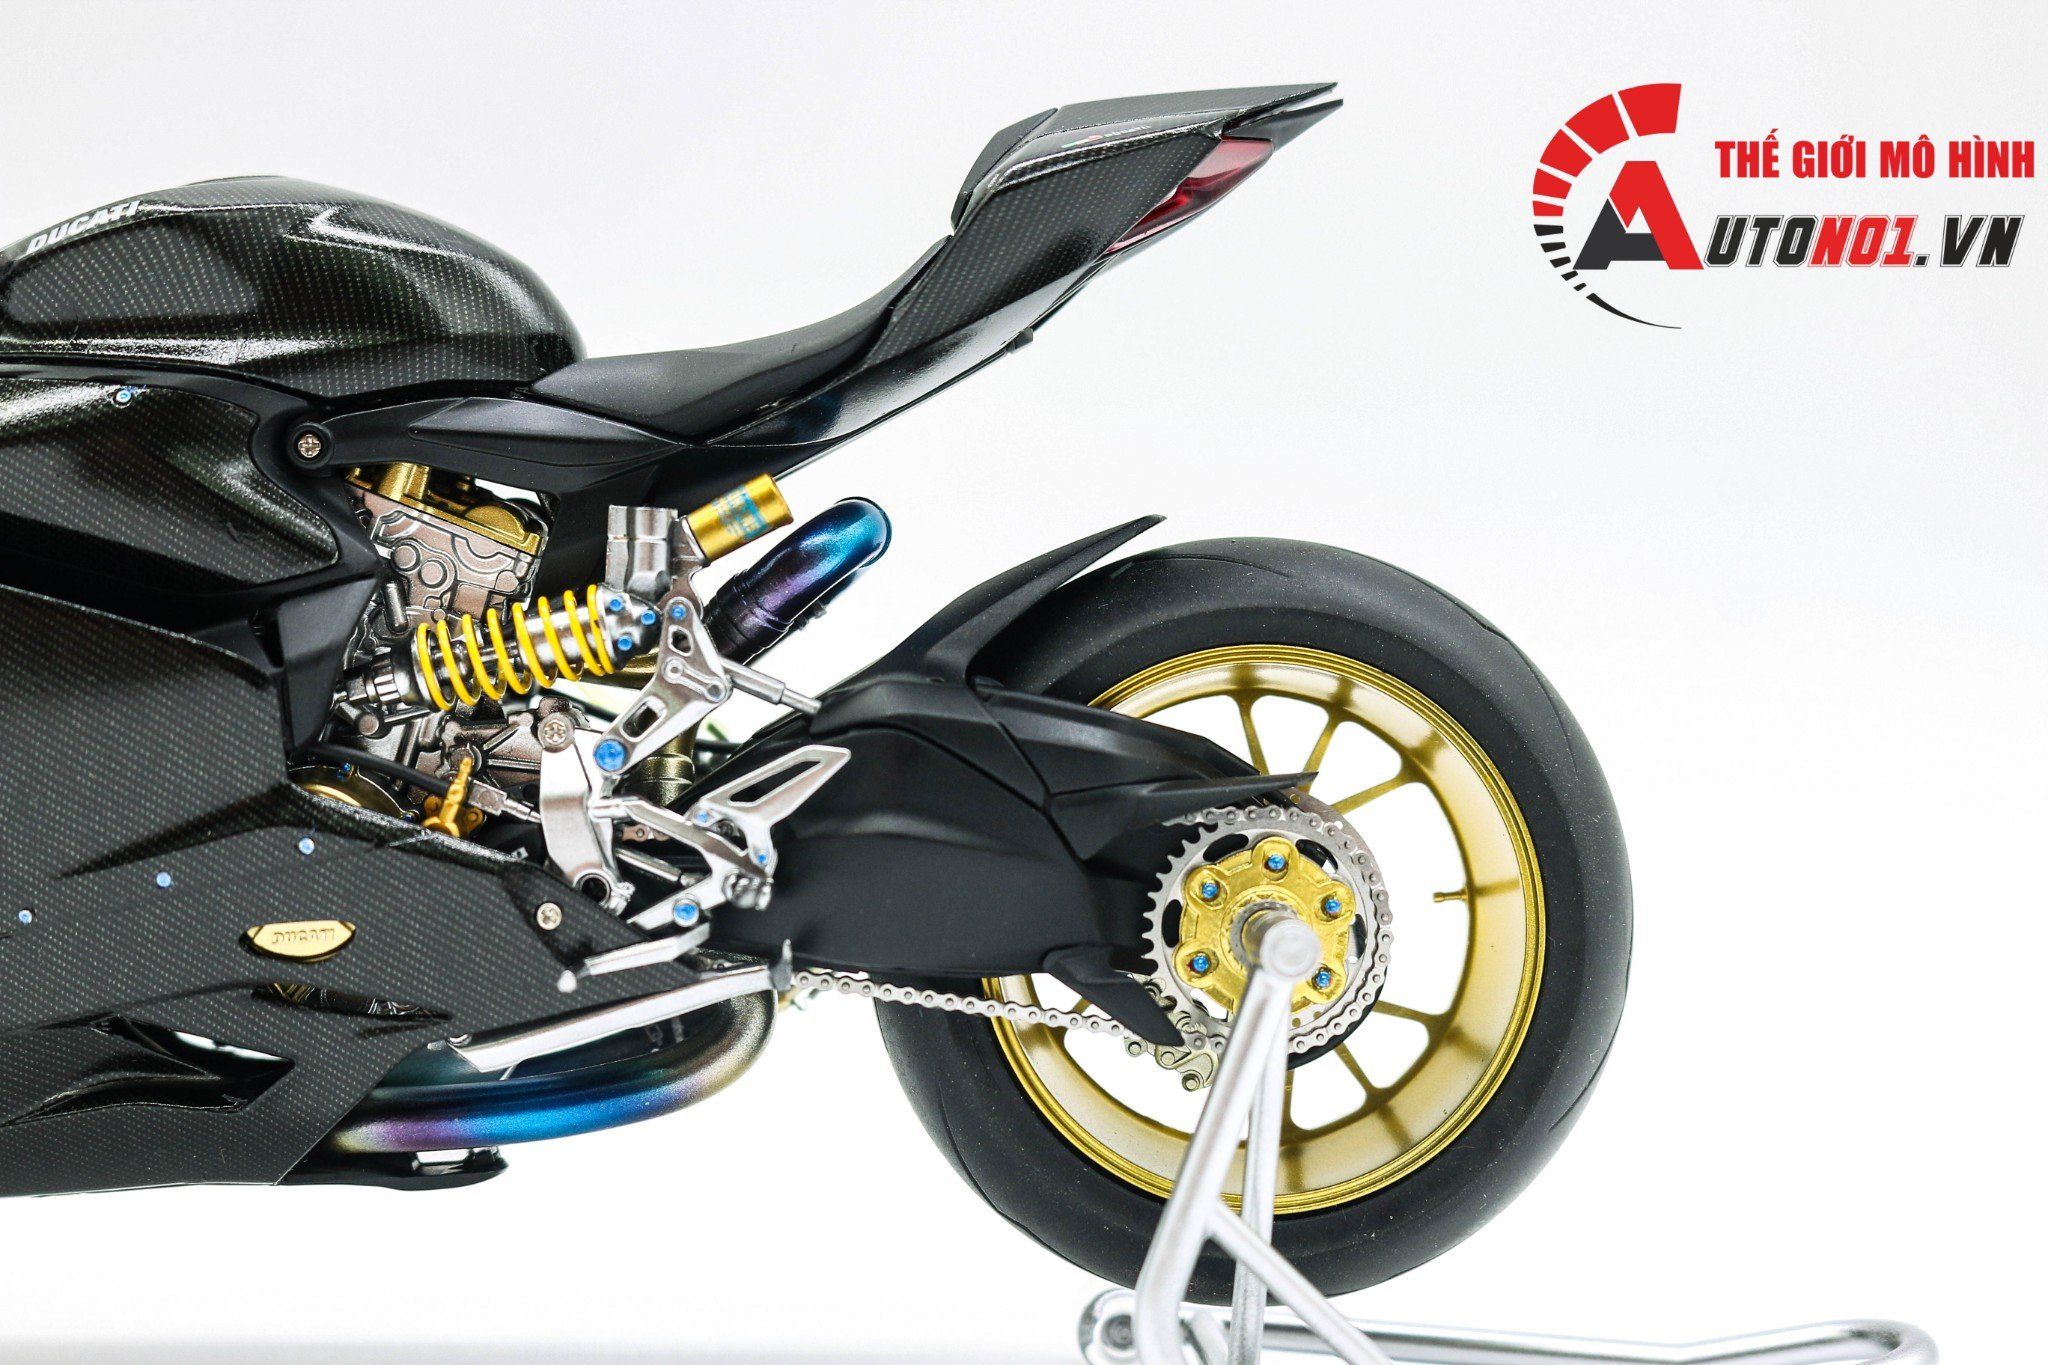  Mô hình xe Ducati 1199 Panigale Full Carbon 1:12 Tamiya 6519 